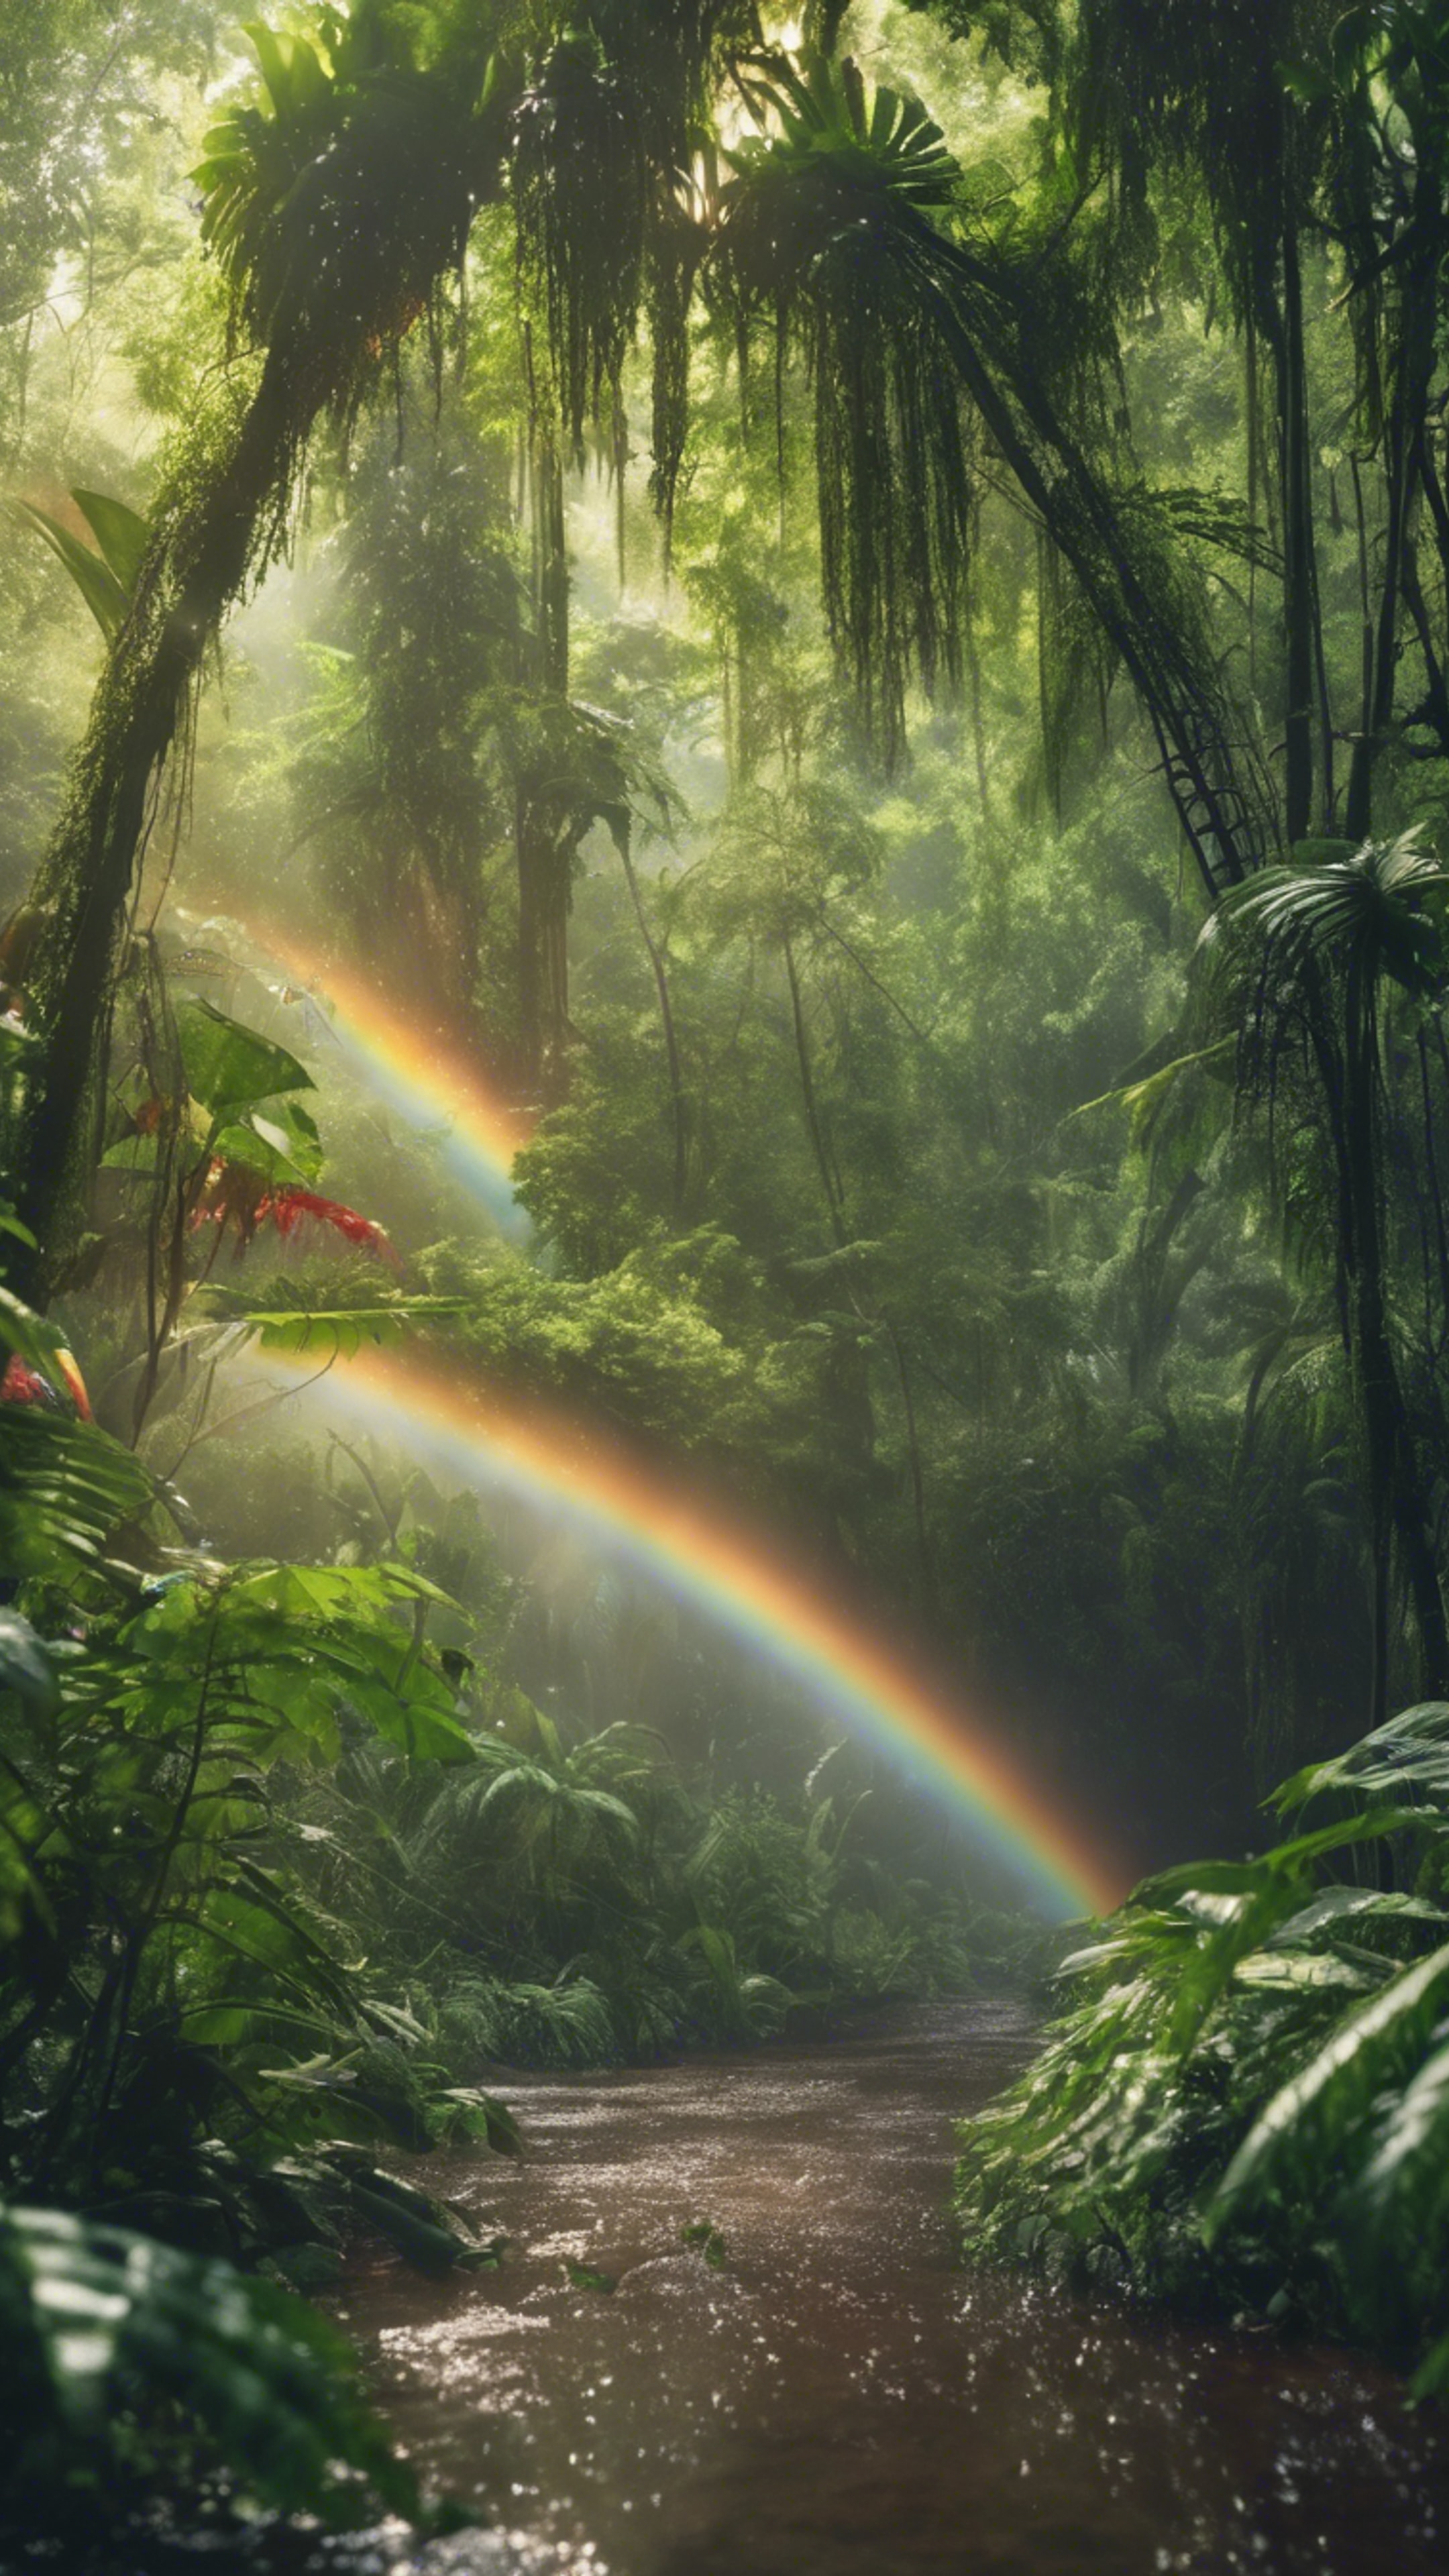 A lush, green rainforest glistening under a rainbow after a summer shower. ورق الجدران[0e0a5e65f97649b38163]